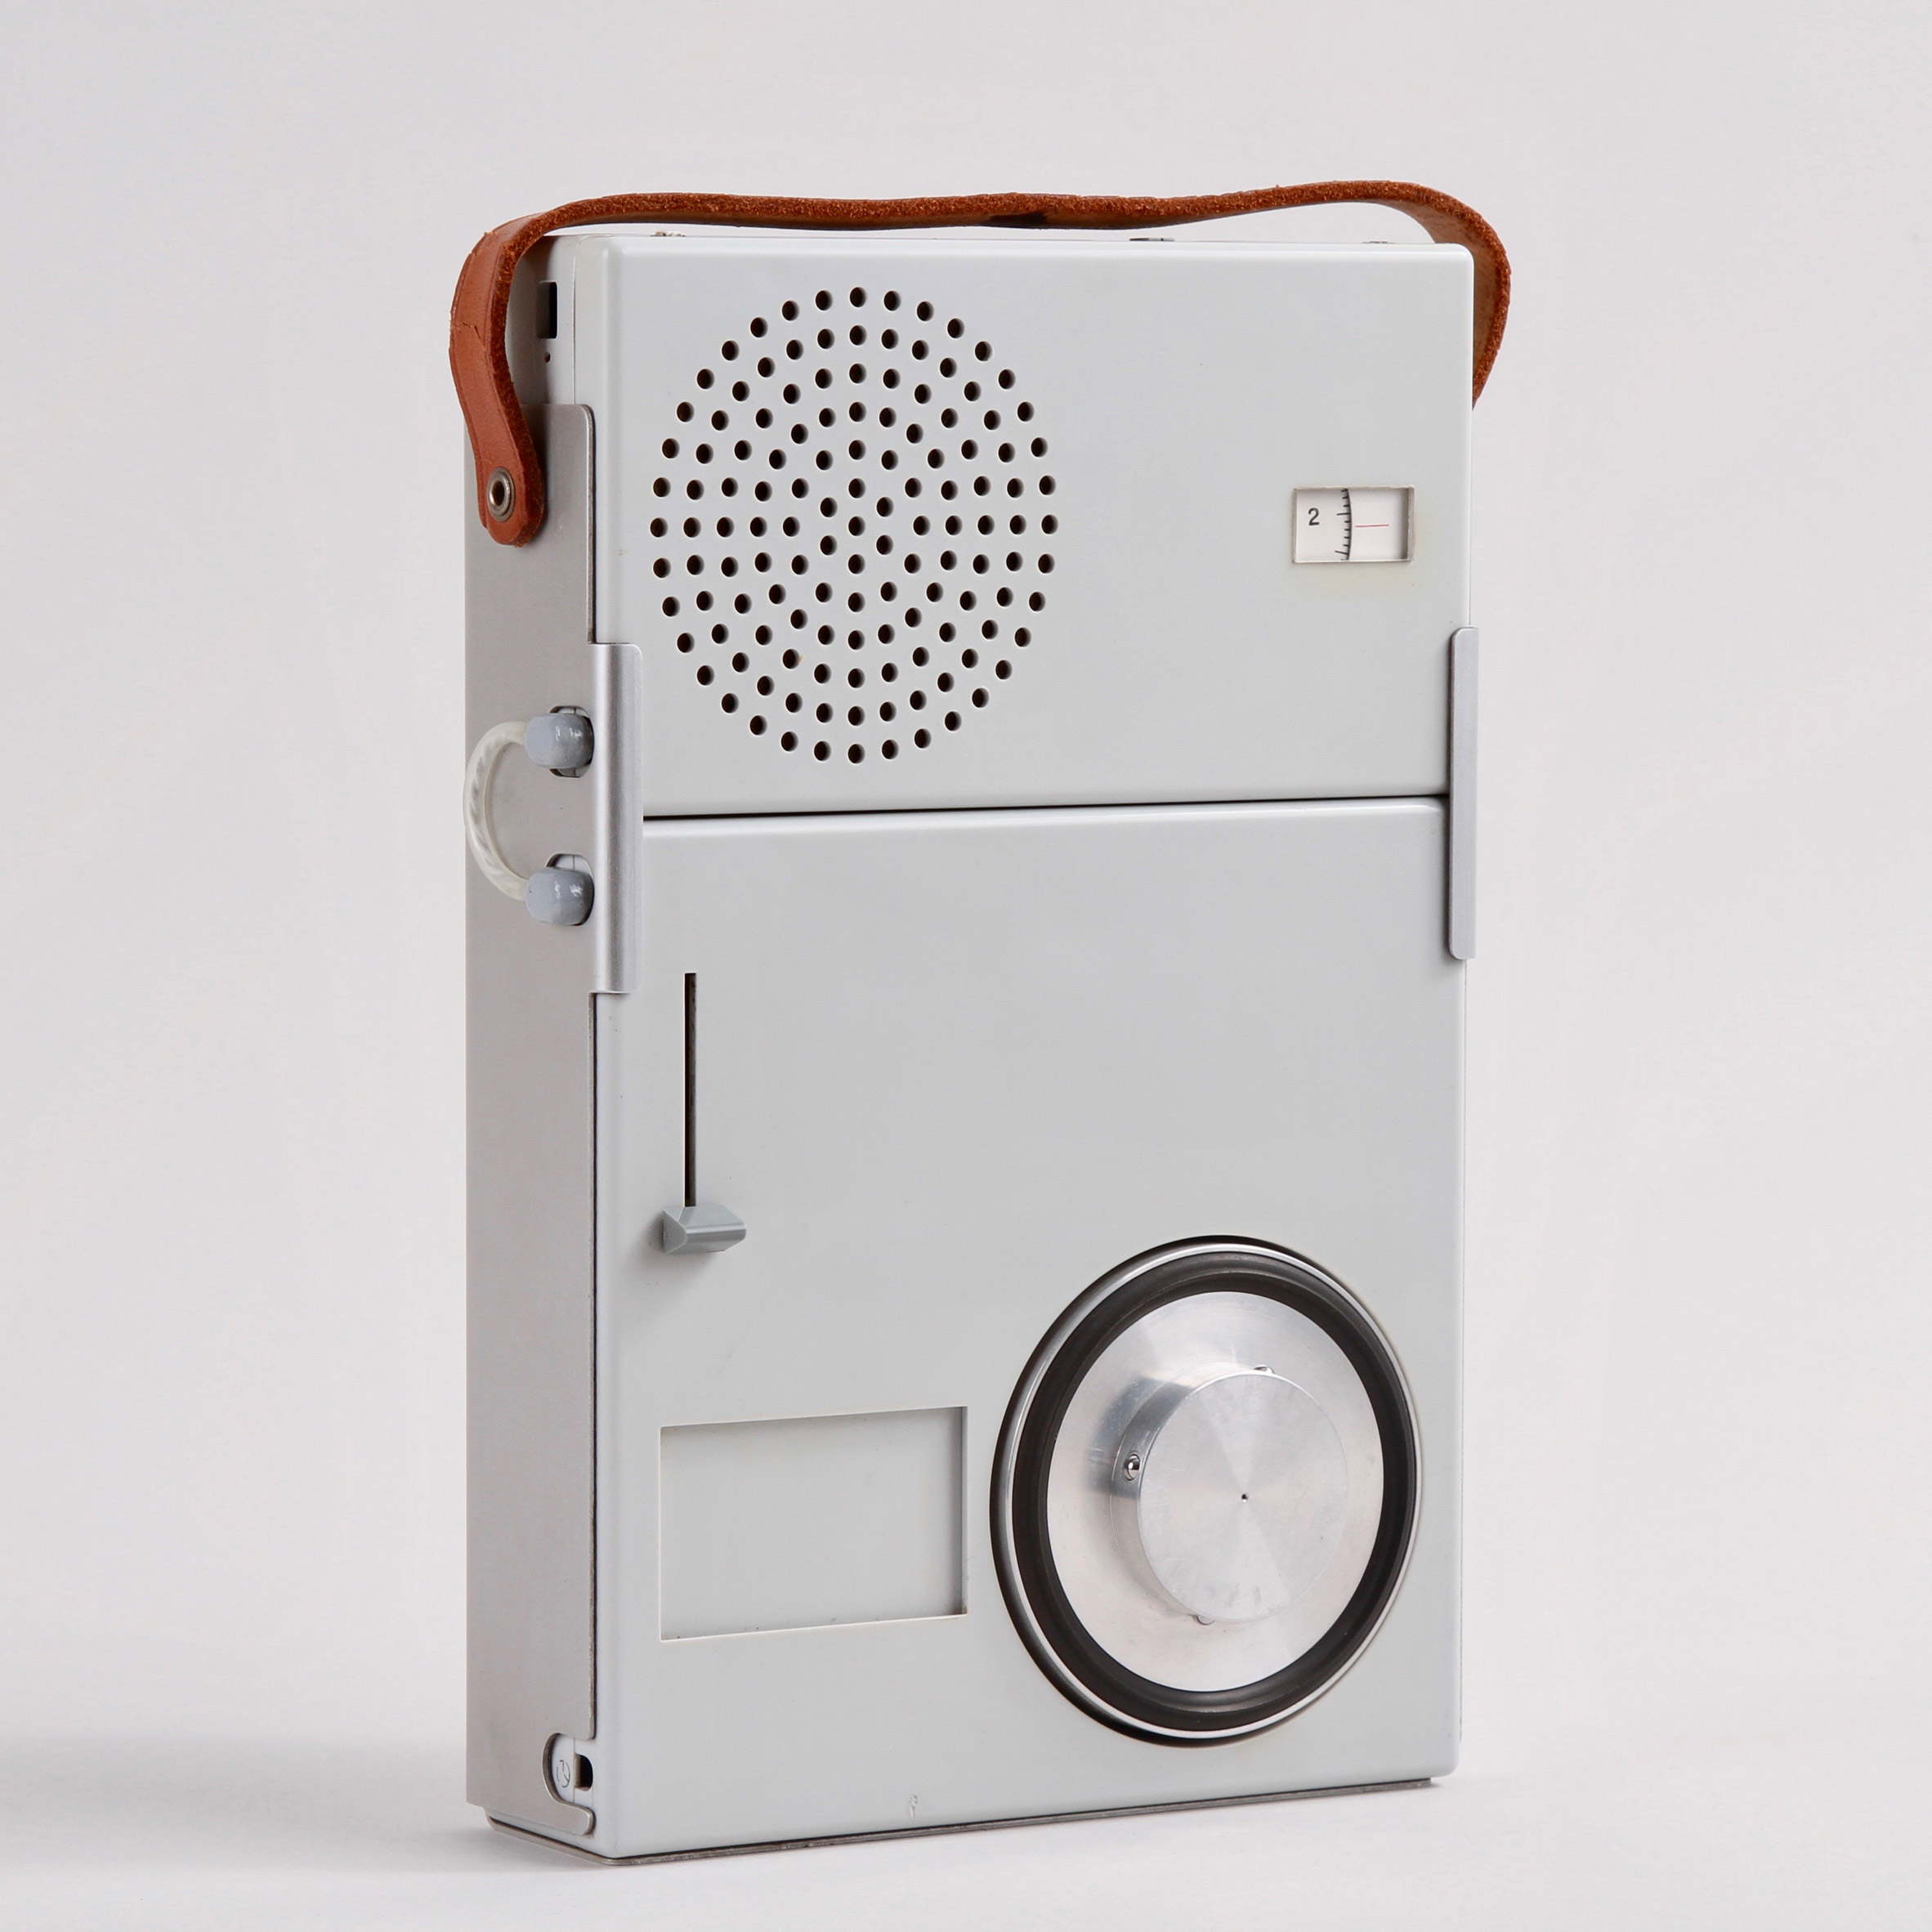 A grey Braun TP1 radio